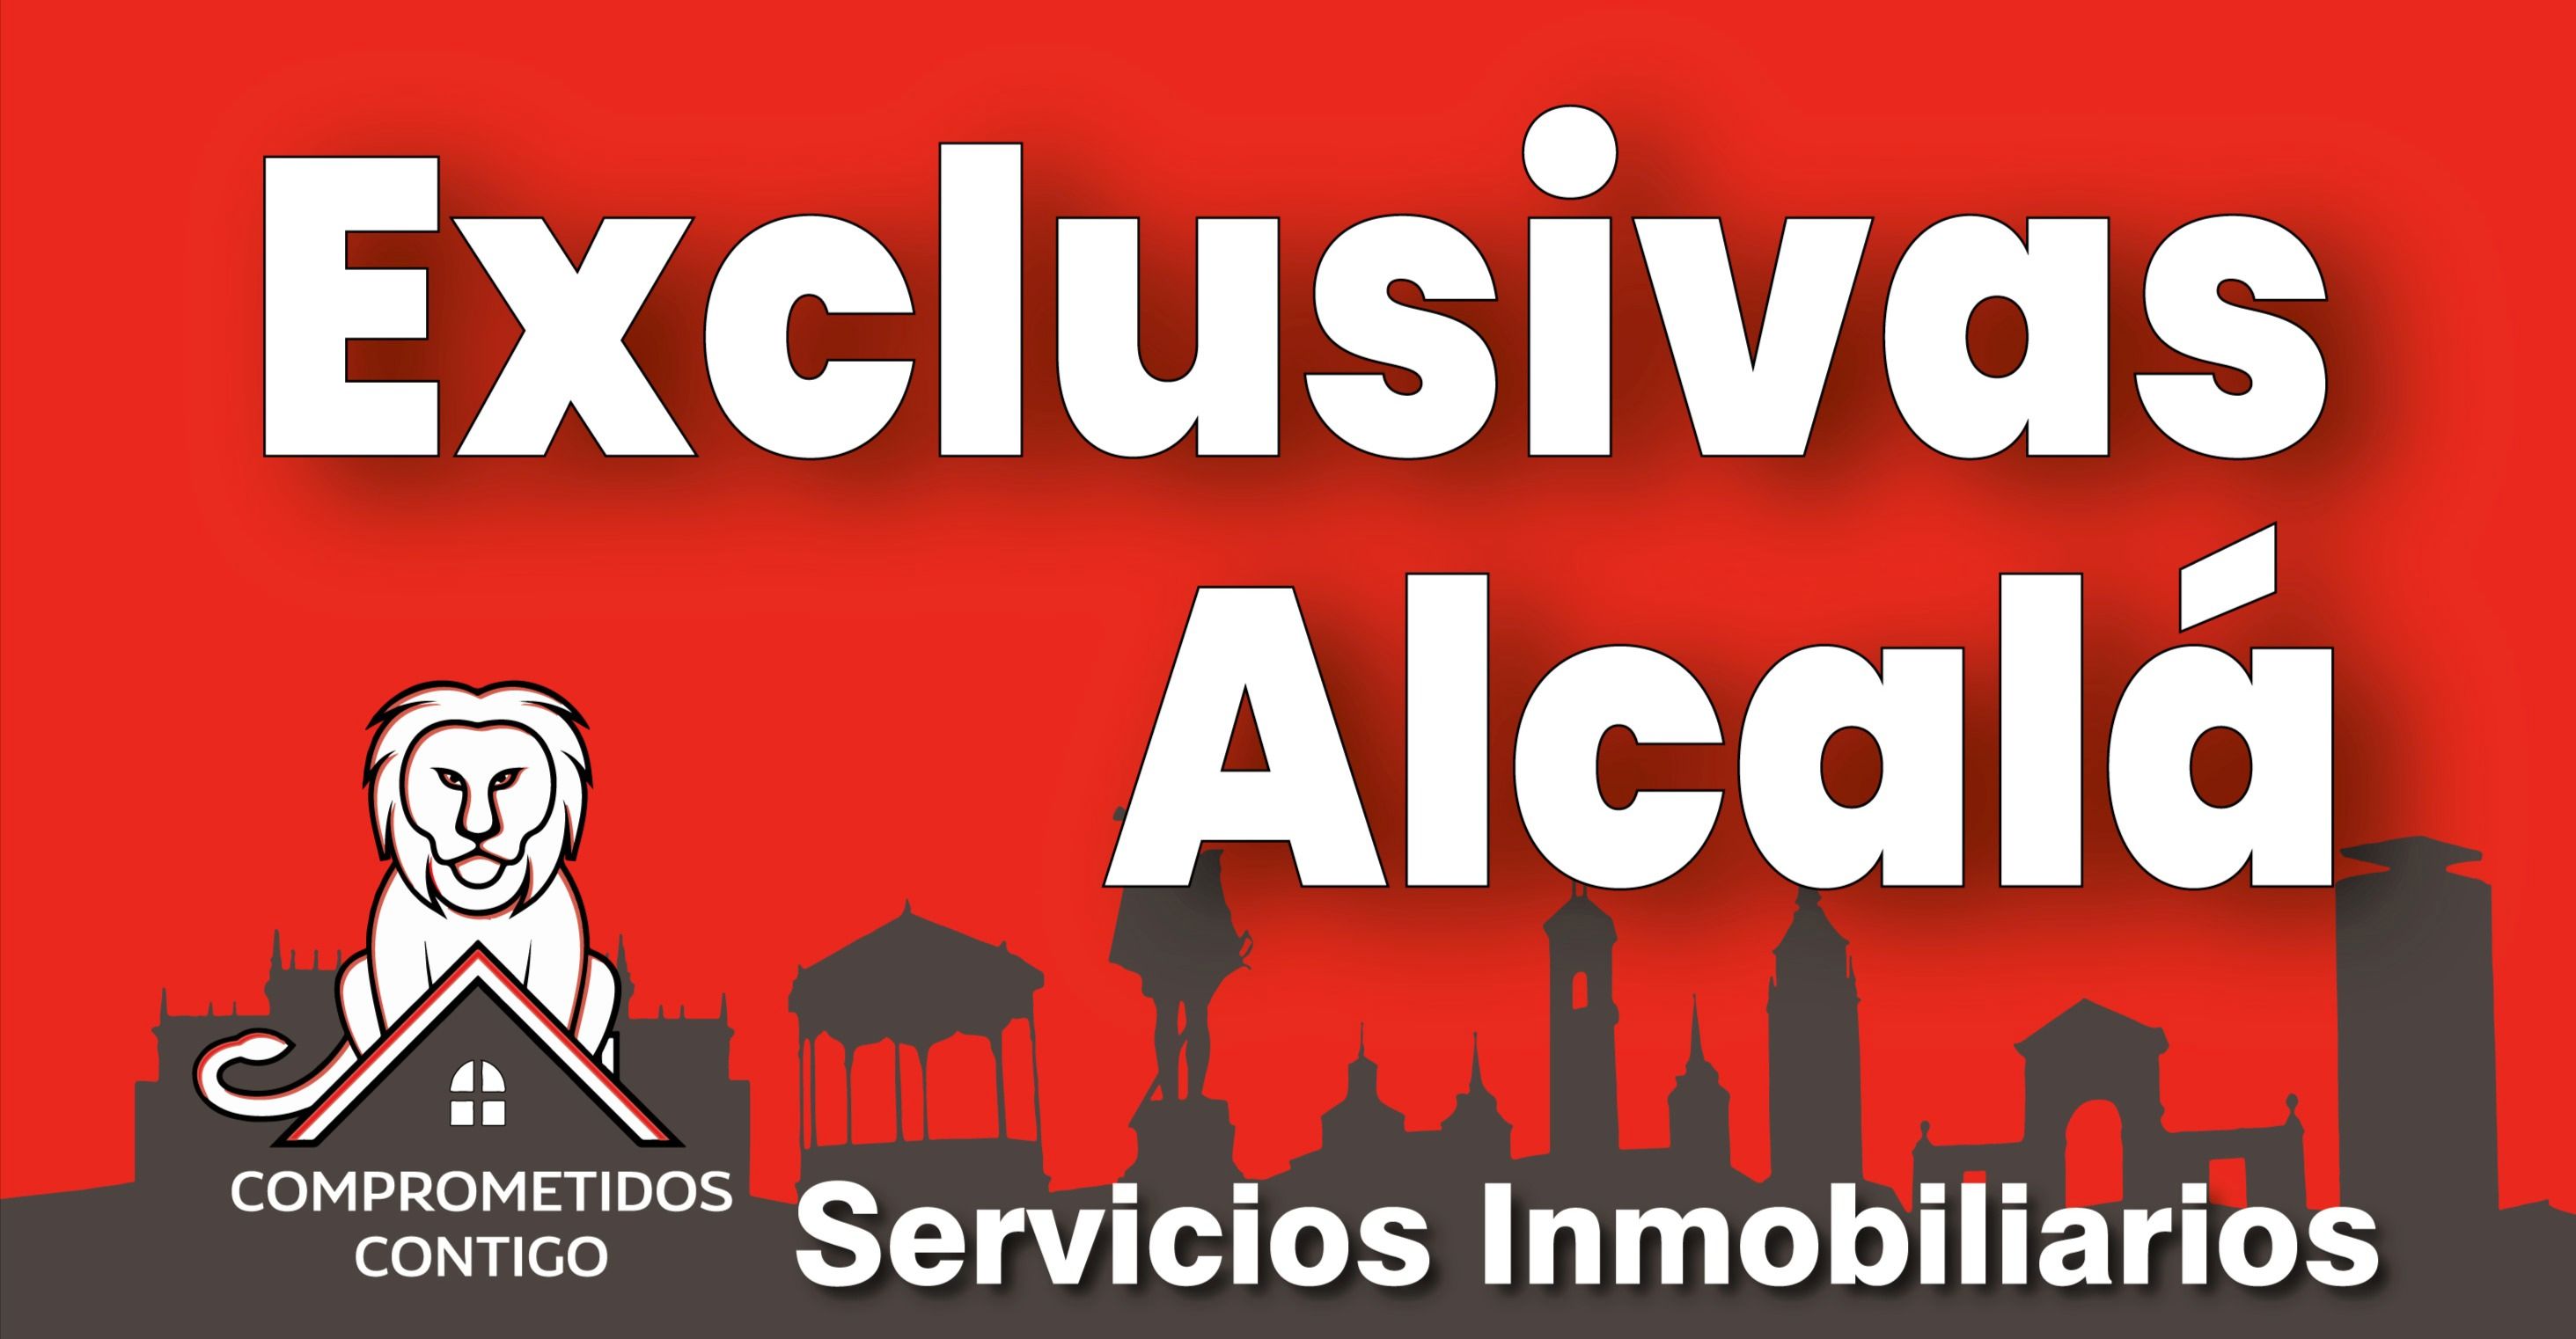 EXCLUSIVAS ALCALA